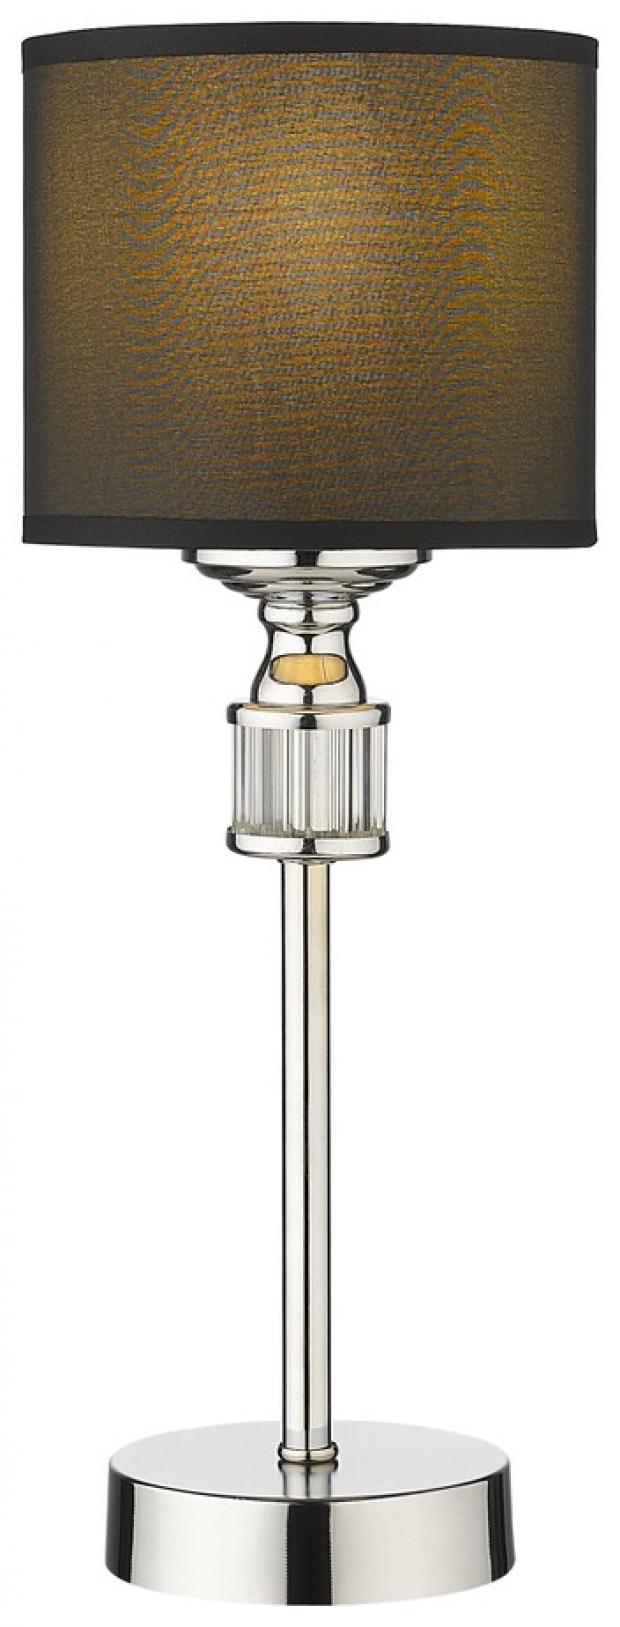 Настольная лампа Velante 293-124-01 293-124-01